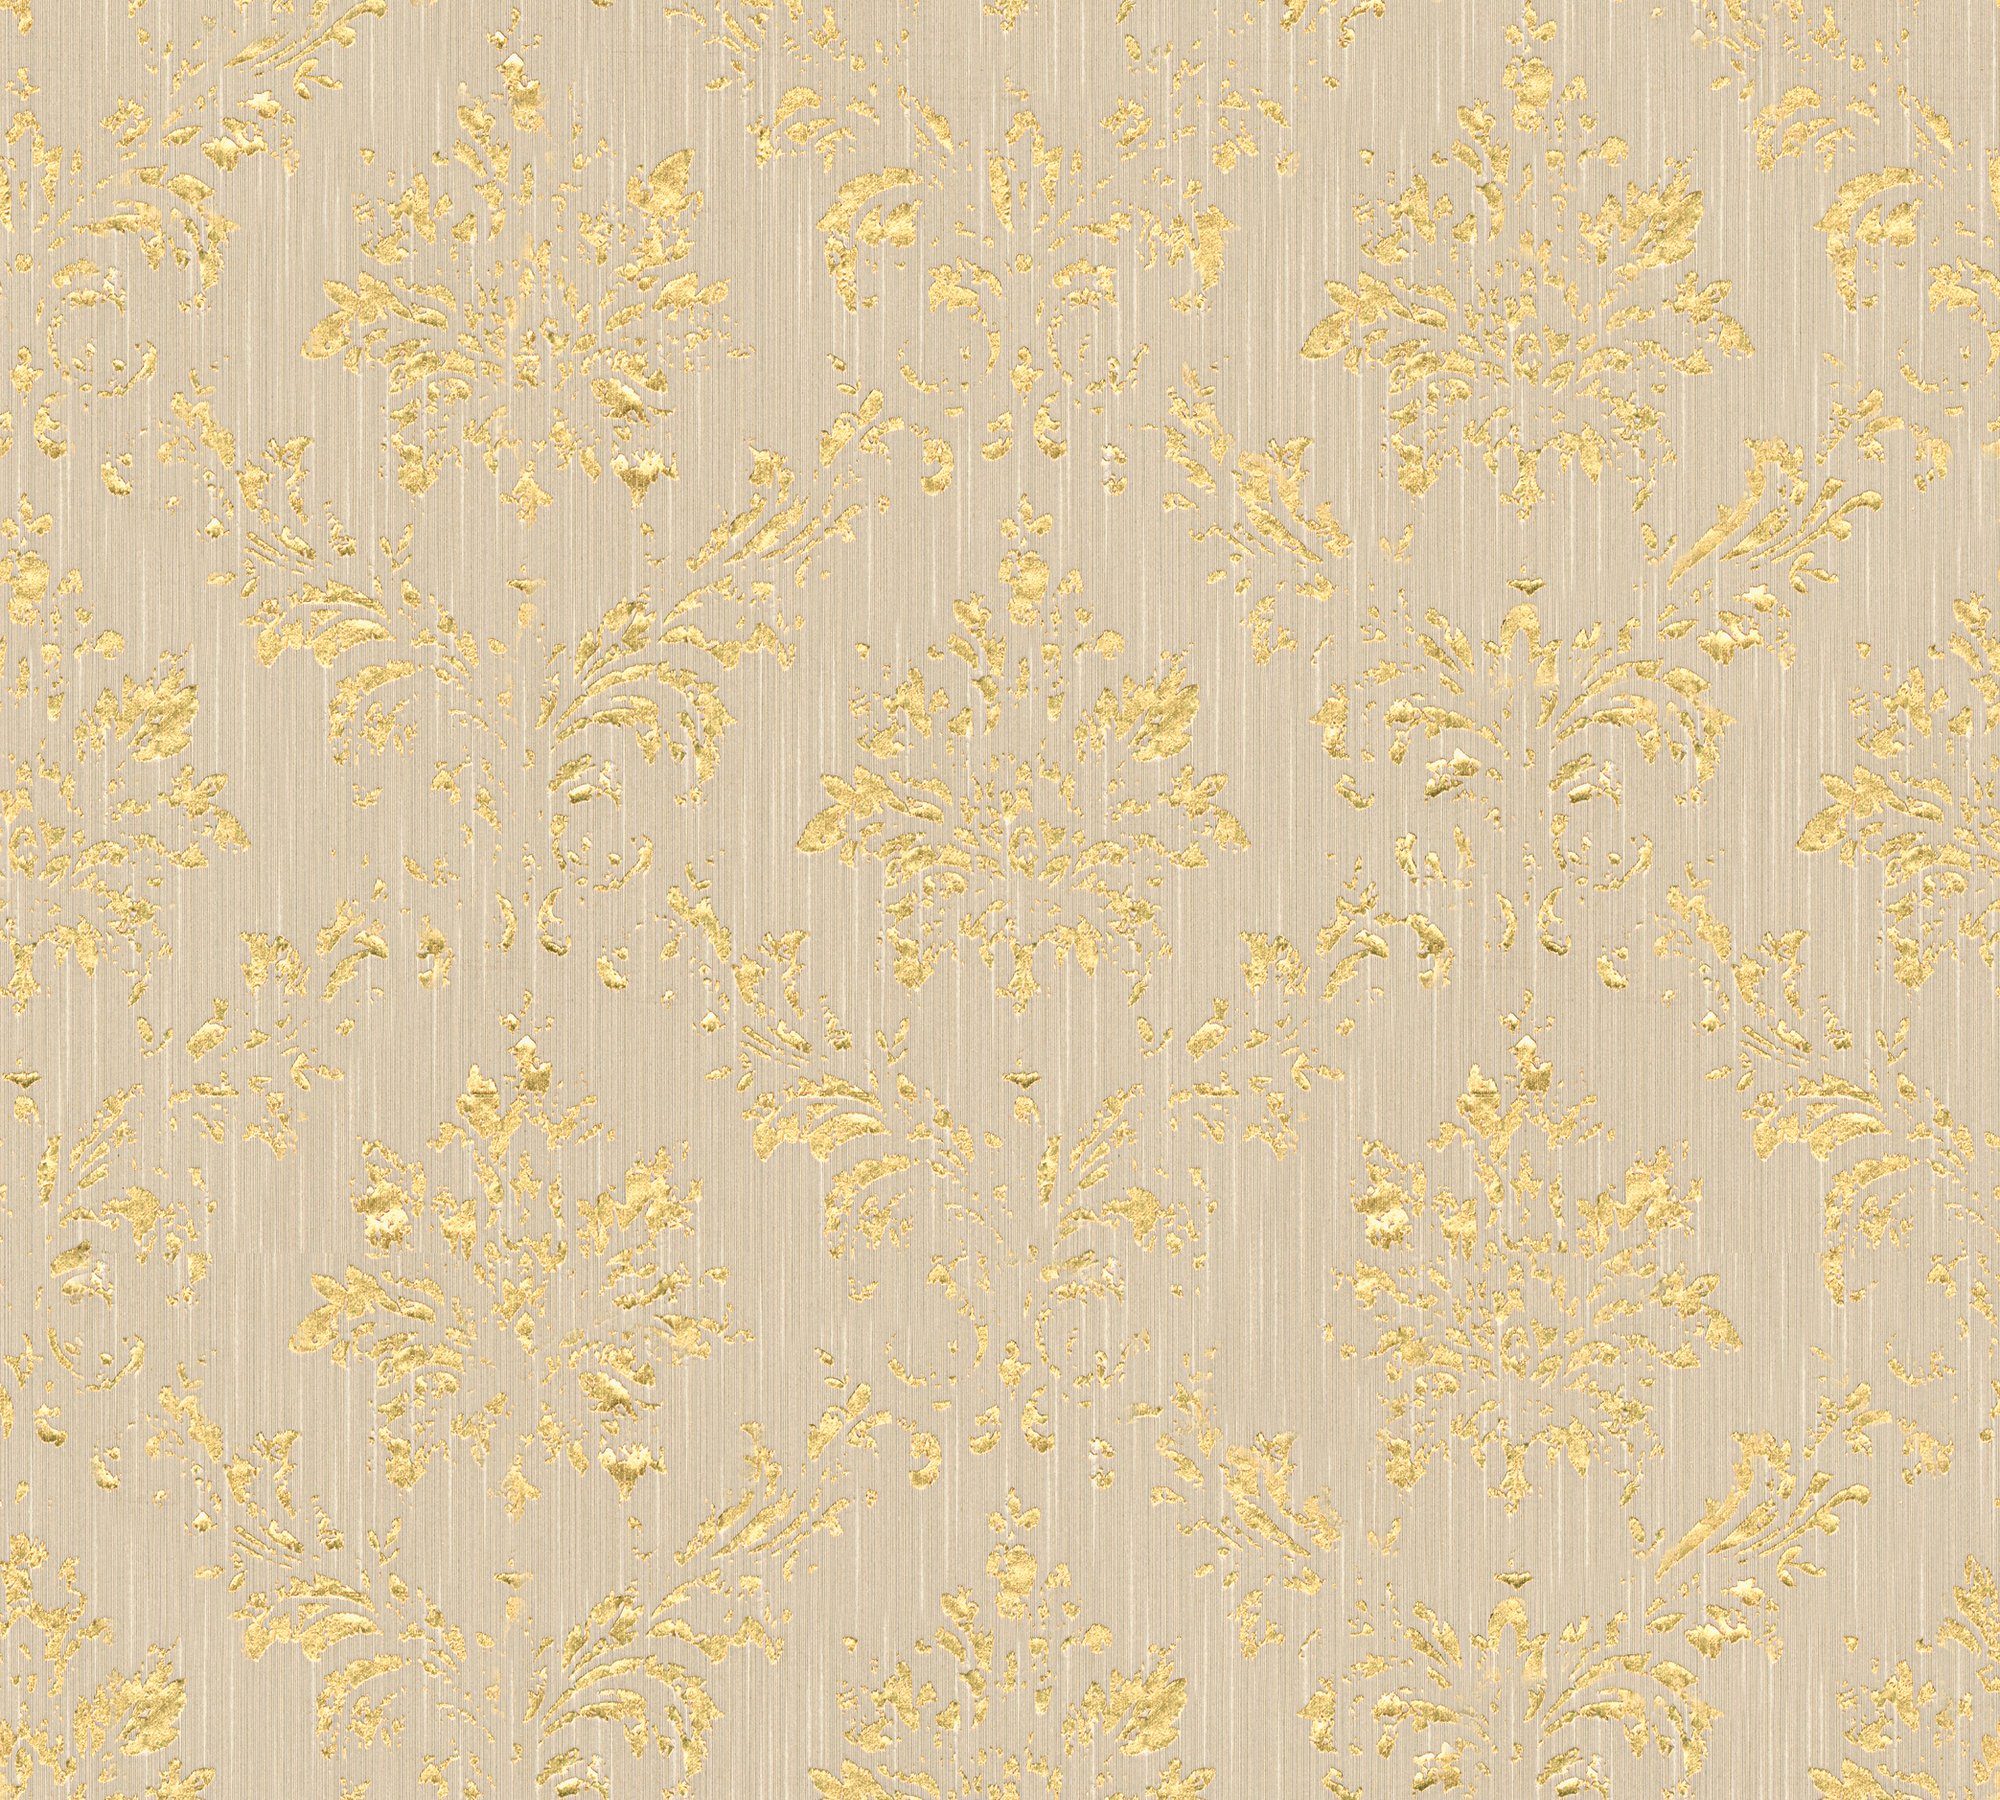 Textiltapete Silk, Paper beige/gold Création Barock glänzend, Ornament A.S. matt, samtig, Tapete Architects Metallic Barock,